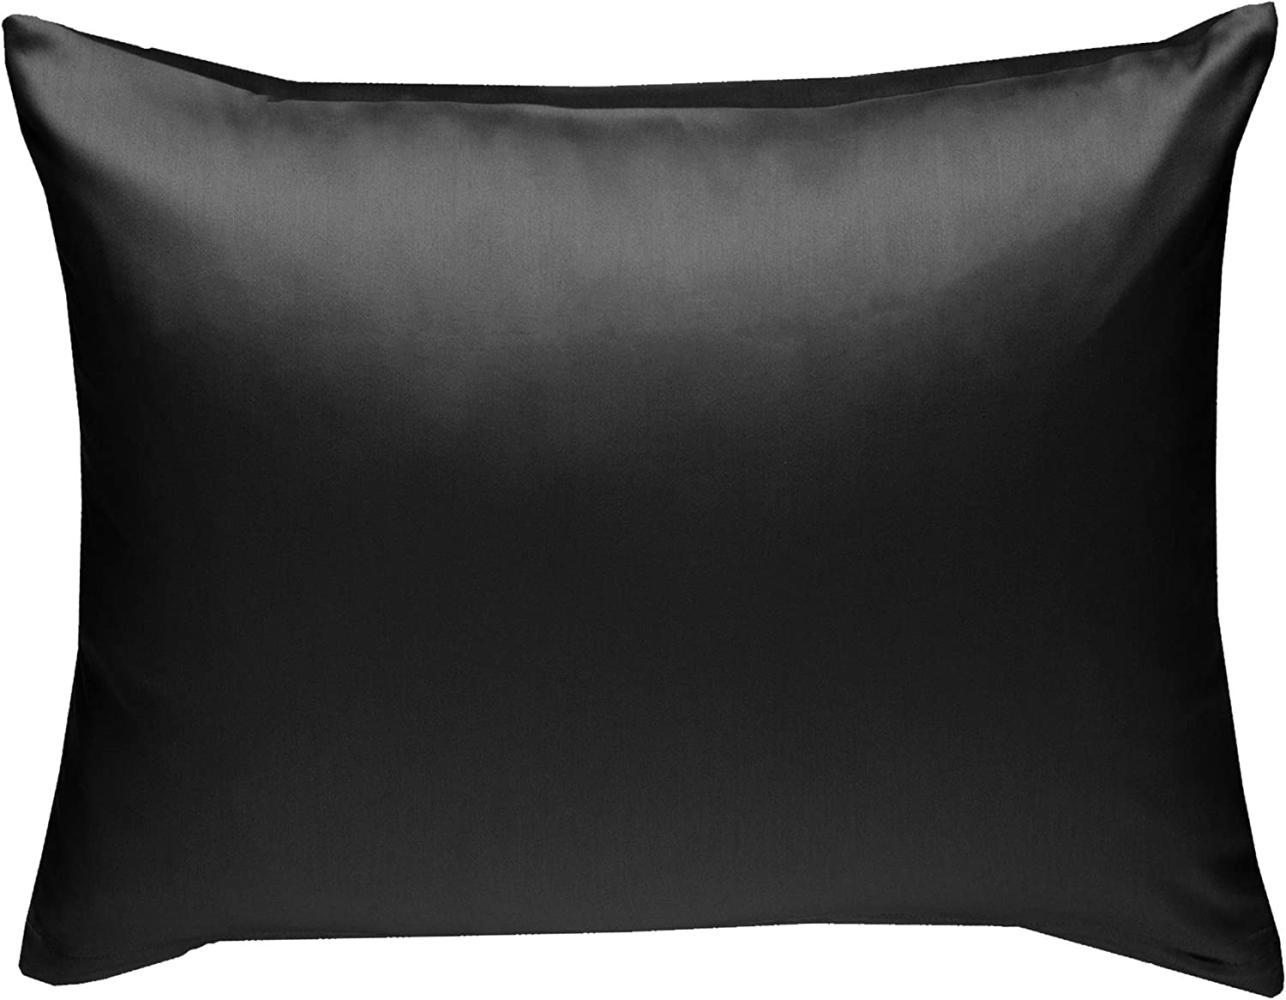 Bettwaesche-mit-Stil Mako-Satin / Baumwollsatin Bettwäsche uni / einfarbig schwarz Kissenbezug 70x90 cm Bild 1